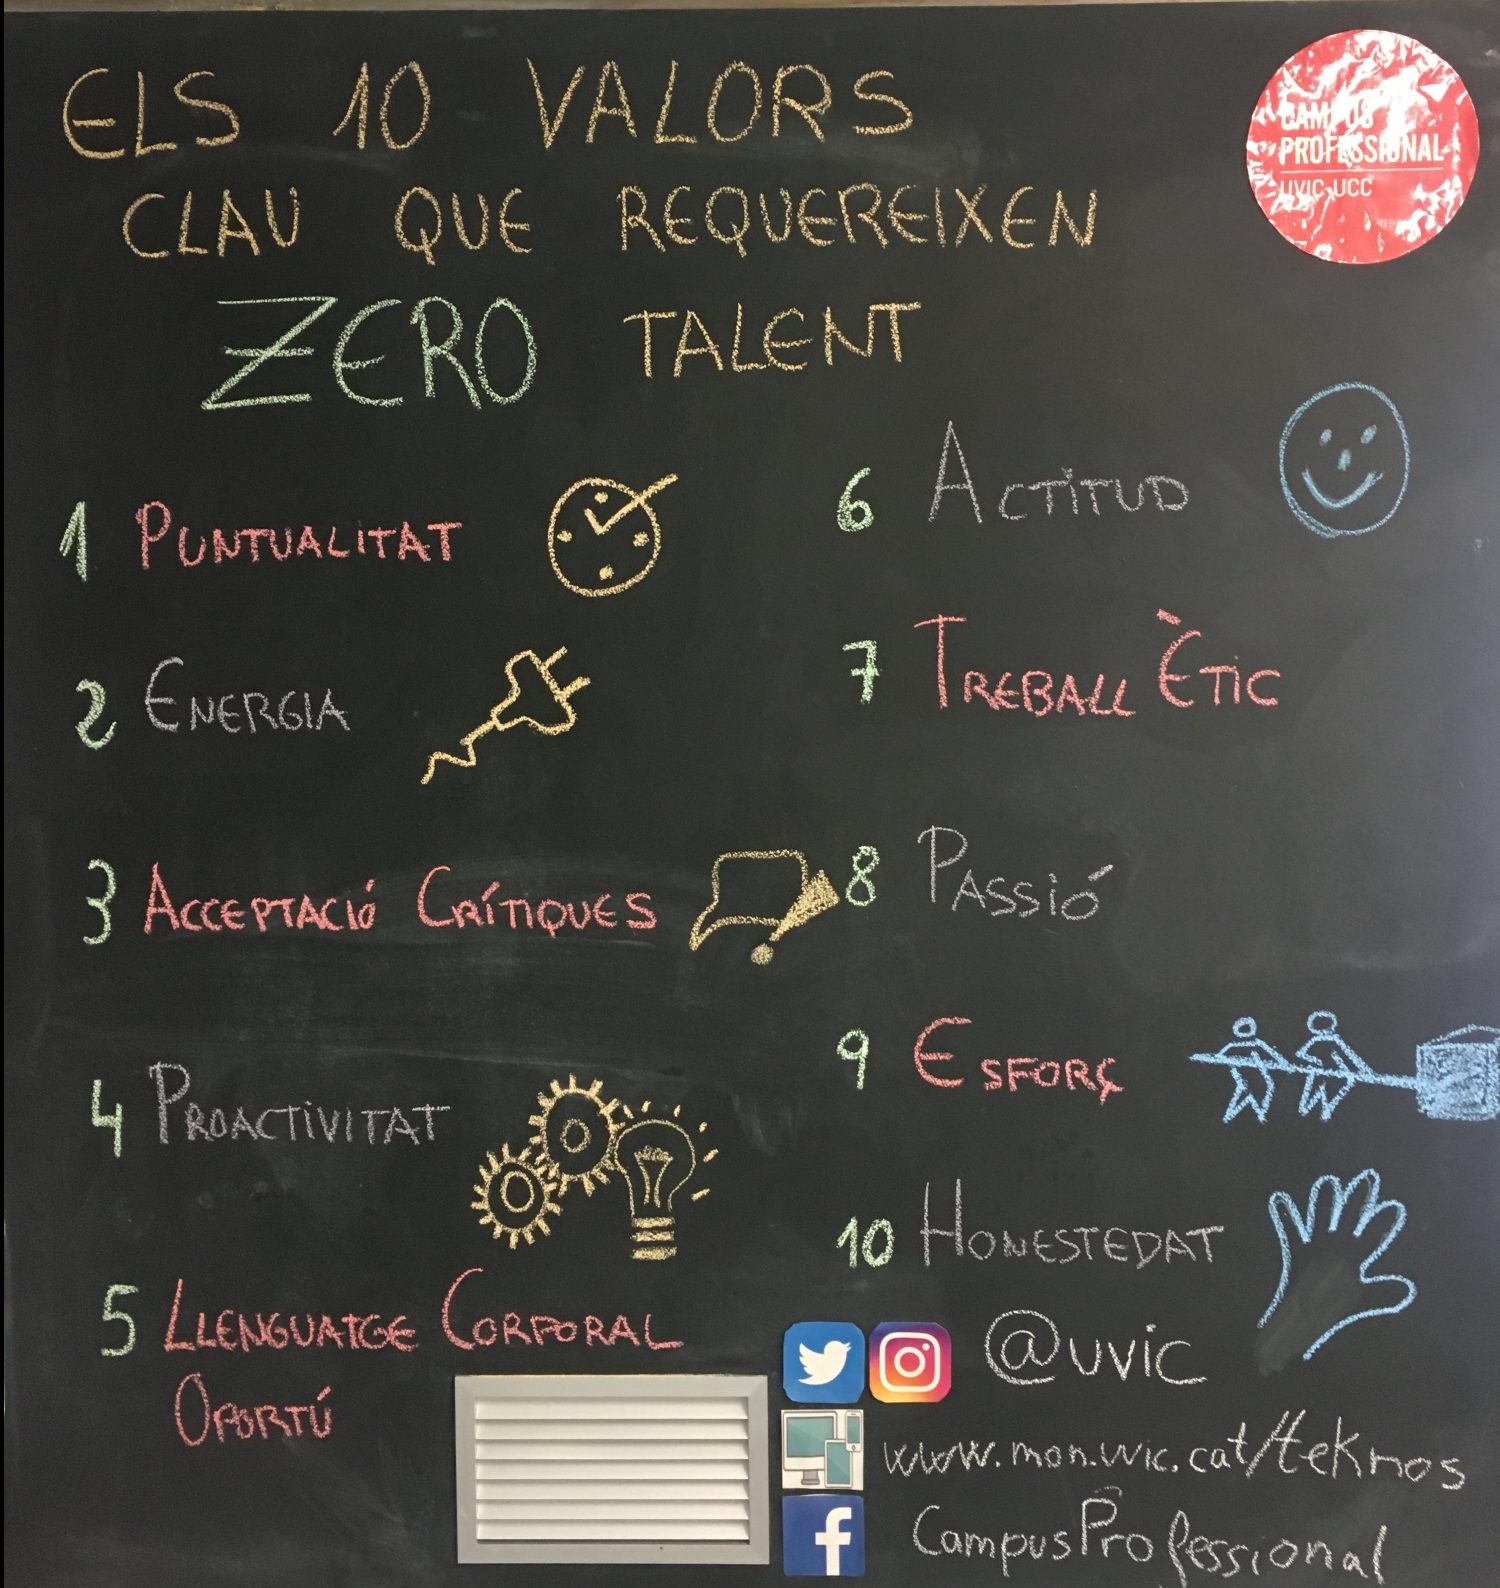 Els 10 valors claus que requereixen ZERO talent